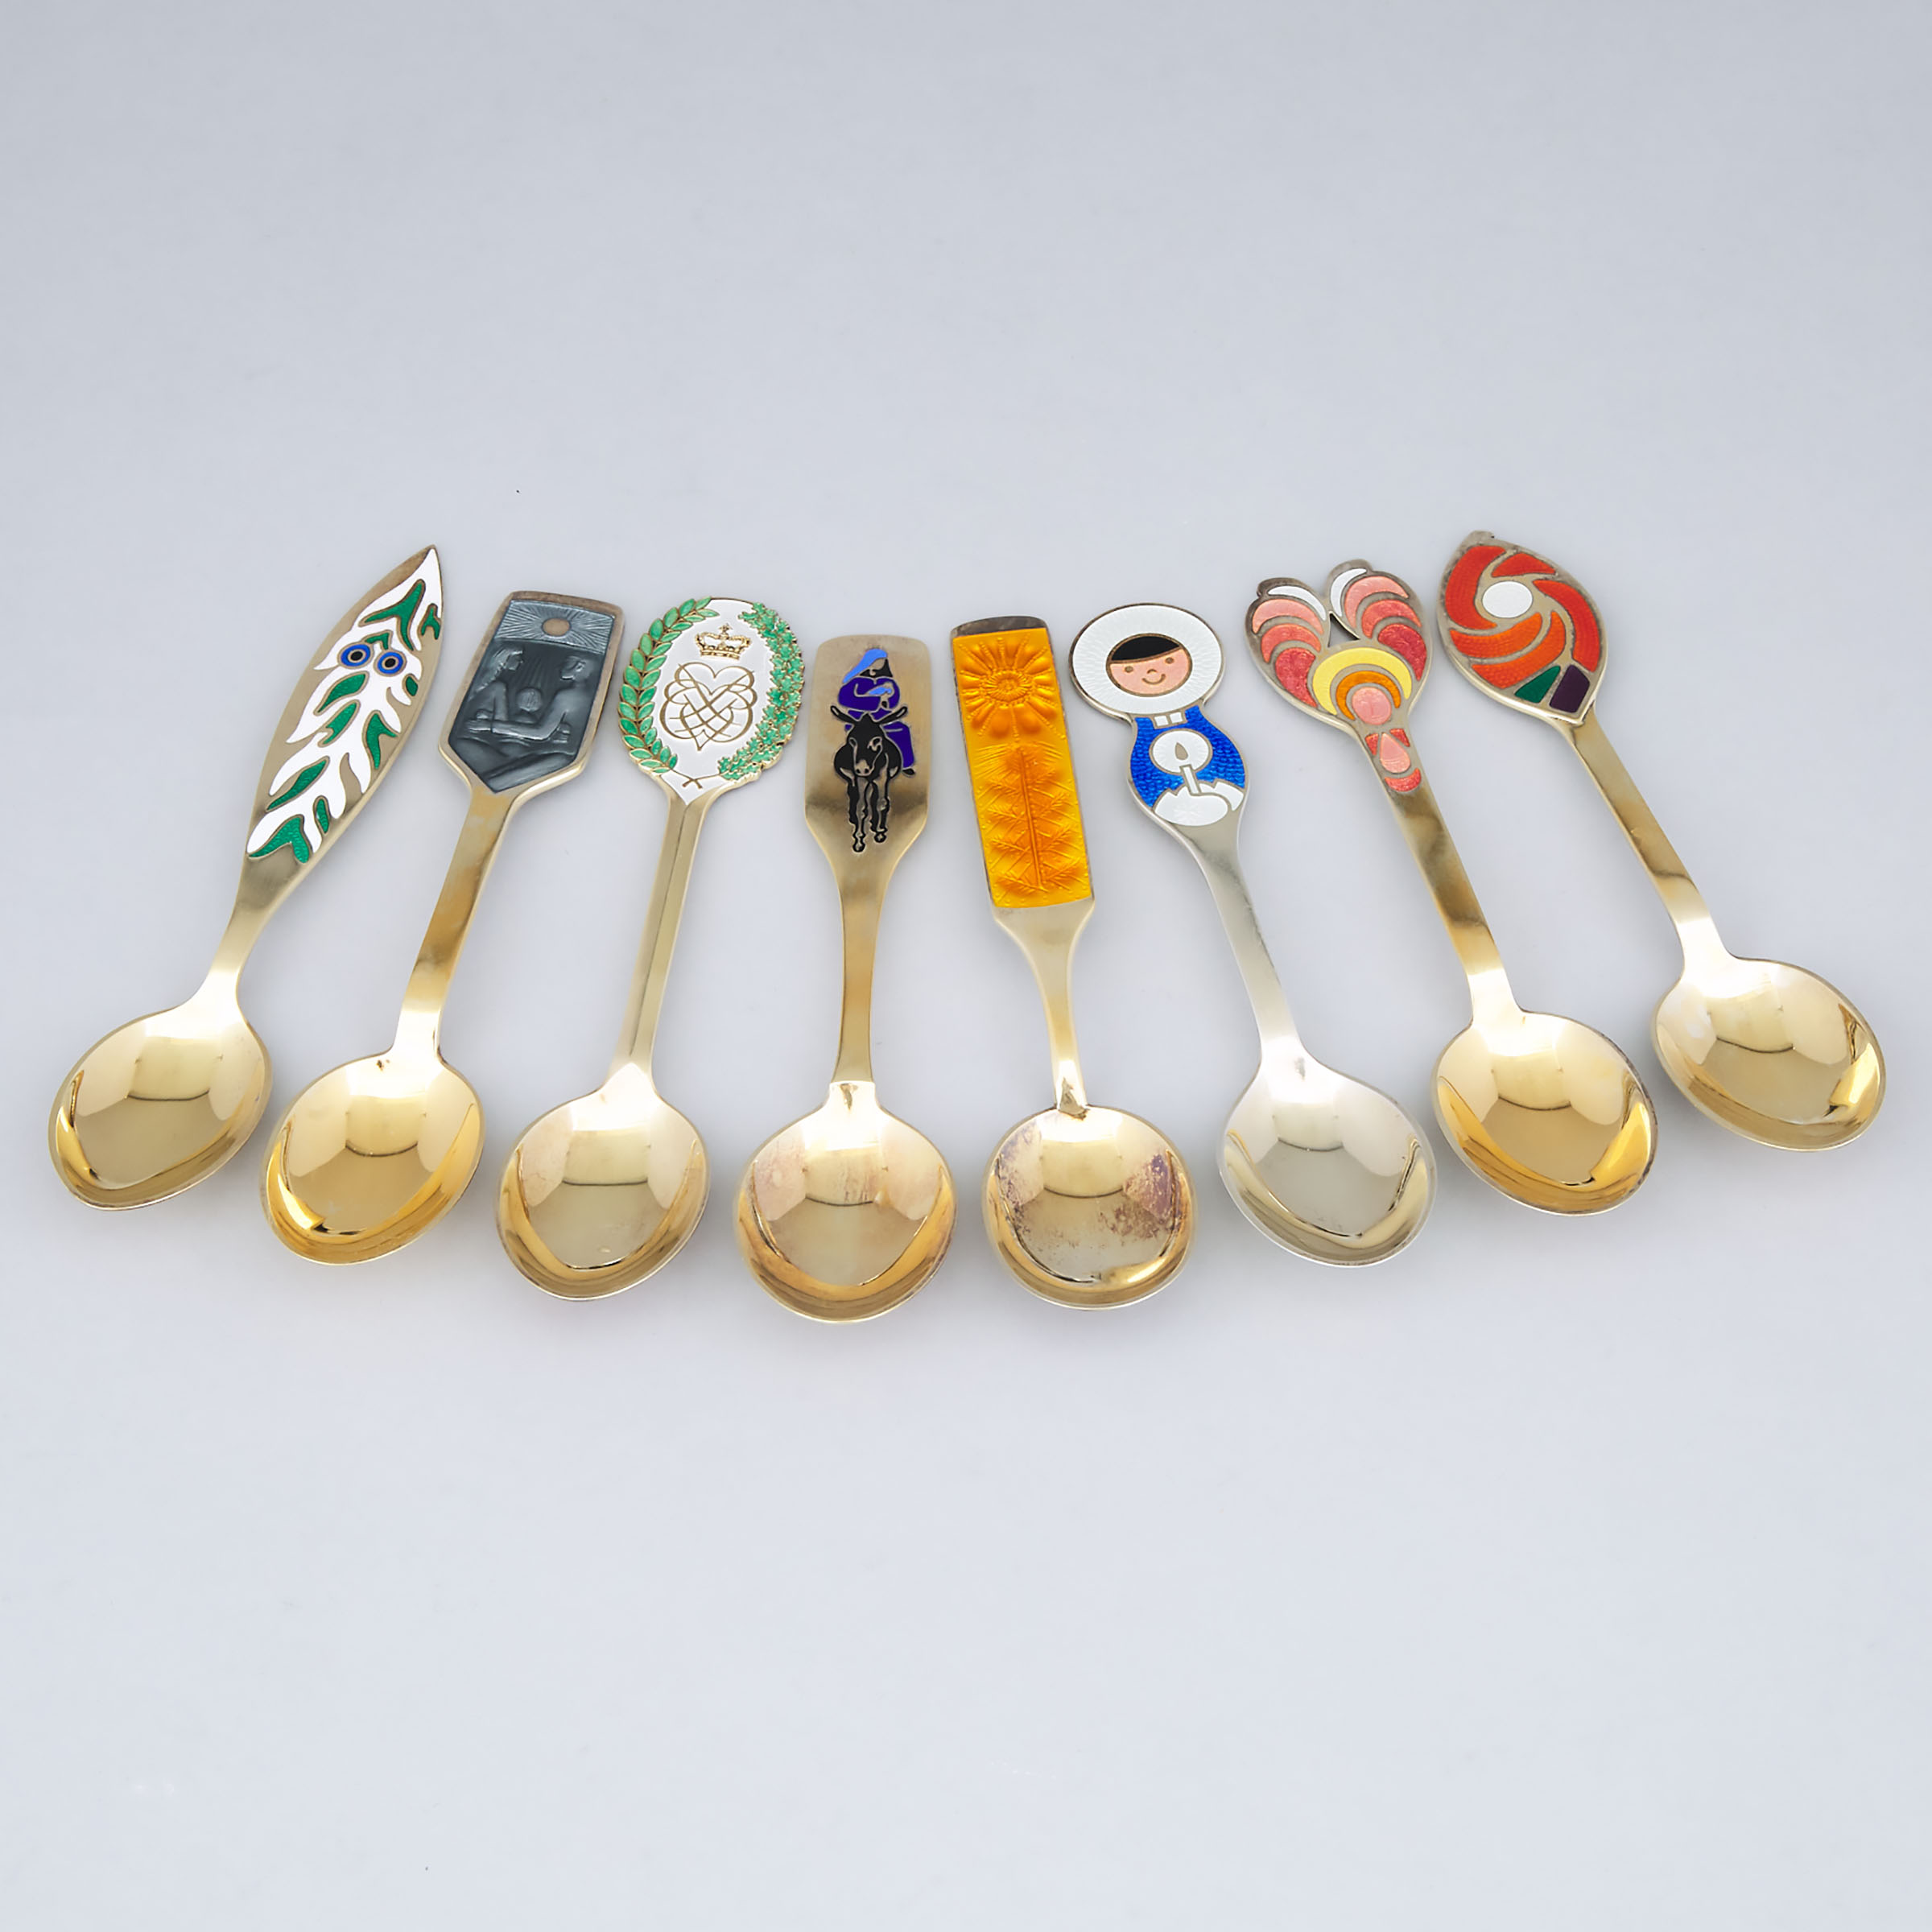 Eight Danish Enameled Silver-Gilt Spoons, Anton Michelsen, Copenhagen, 1966-73